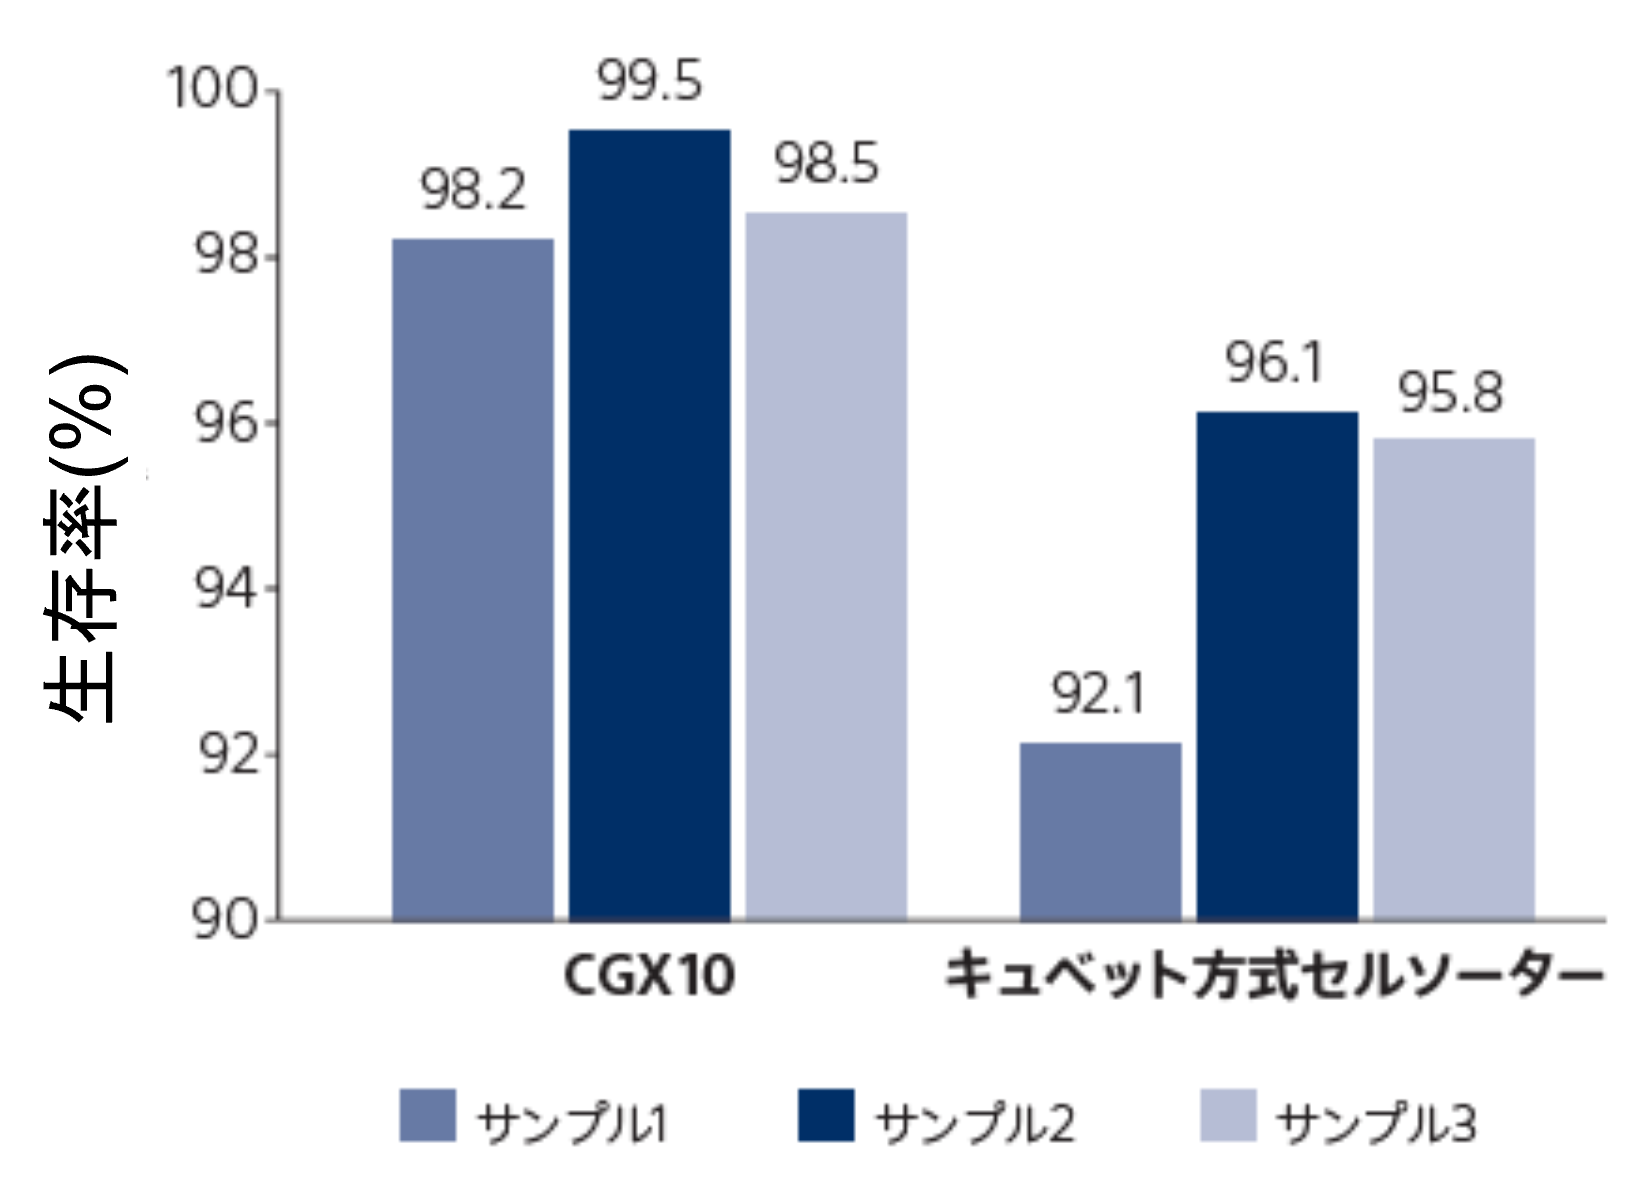 CGX10と従来型のキュベット方式セルソーターとの生存率比較グラフ。3種のサンプルの比較結果のうちキュベット方式セルソーターでは92.1%, 96.1%, 95.8%となっている。一方でCGX10は98.2%, 99.5%, 98.5%とすべての結果において従来型よりも高い生存率となっている。